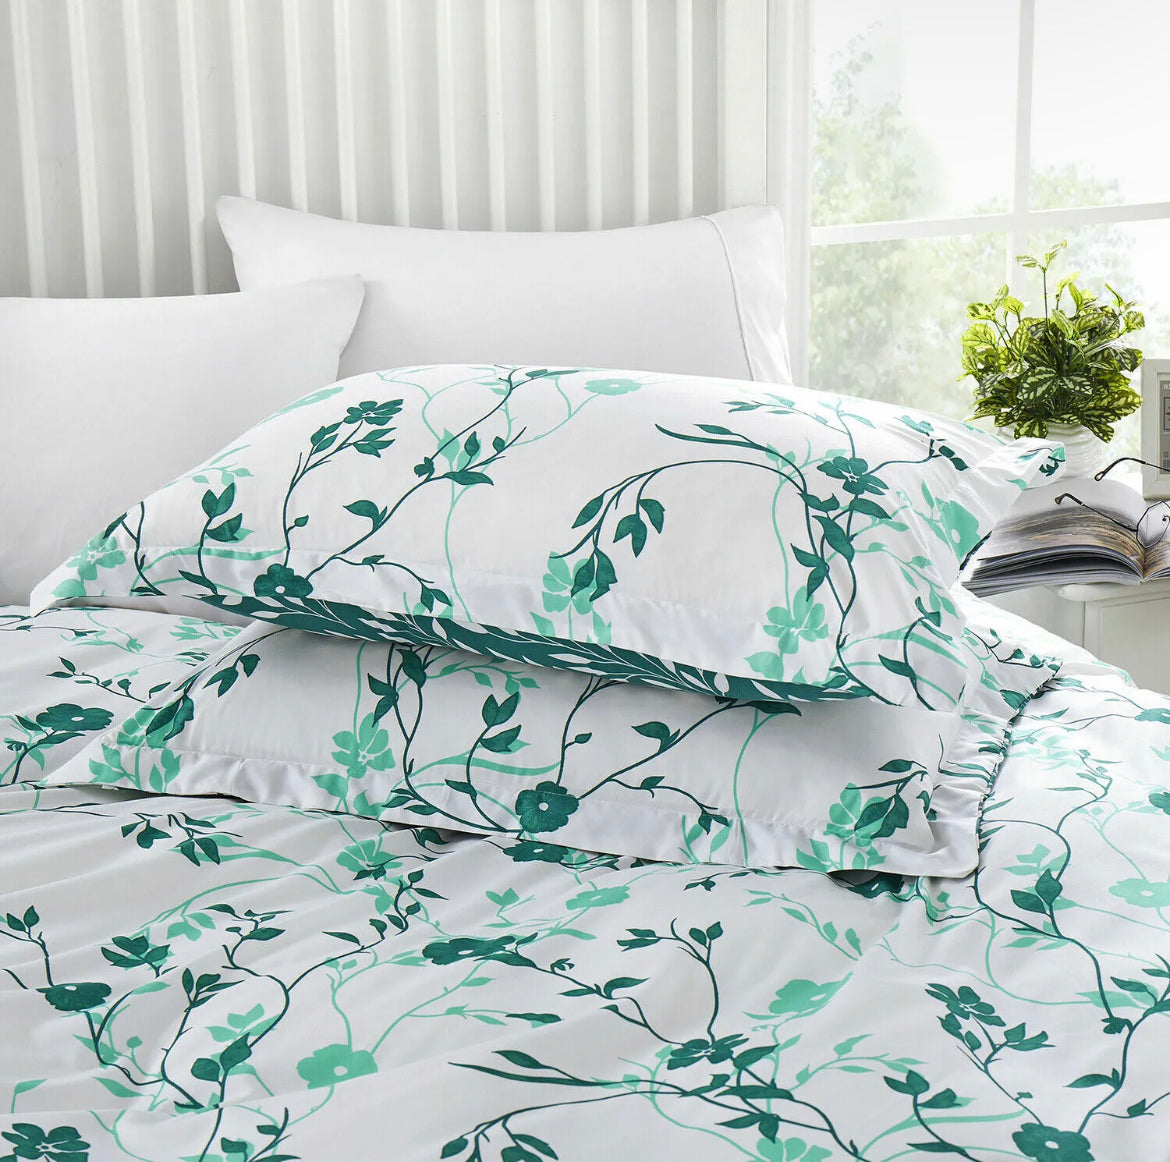 Green Floral Bedding set